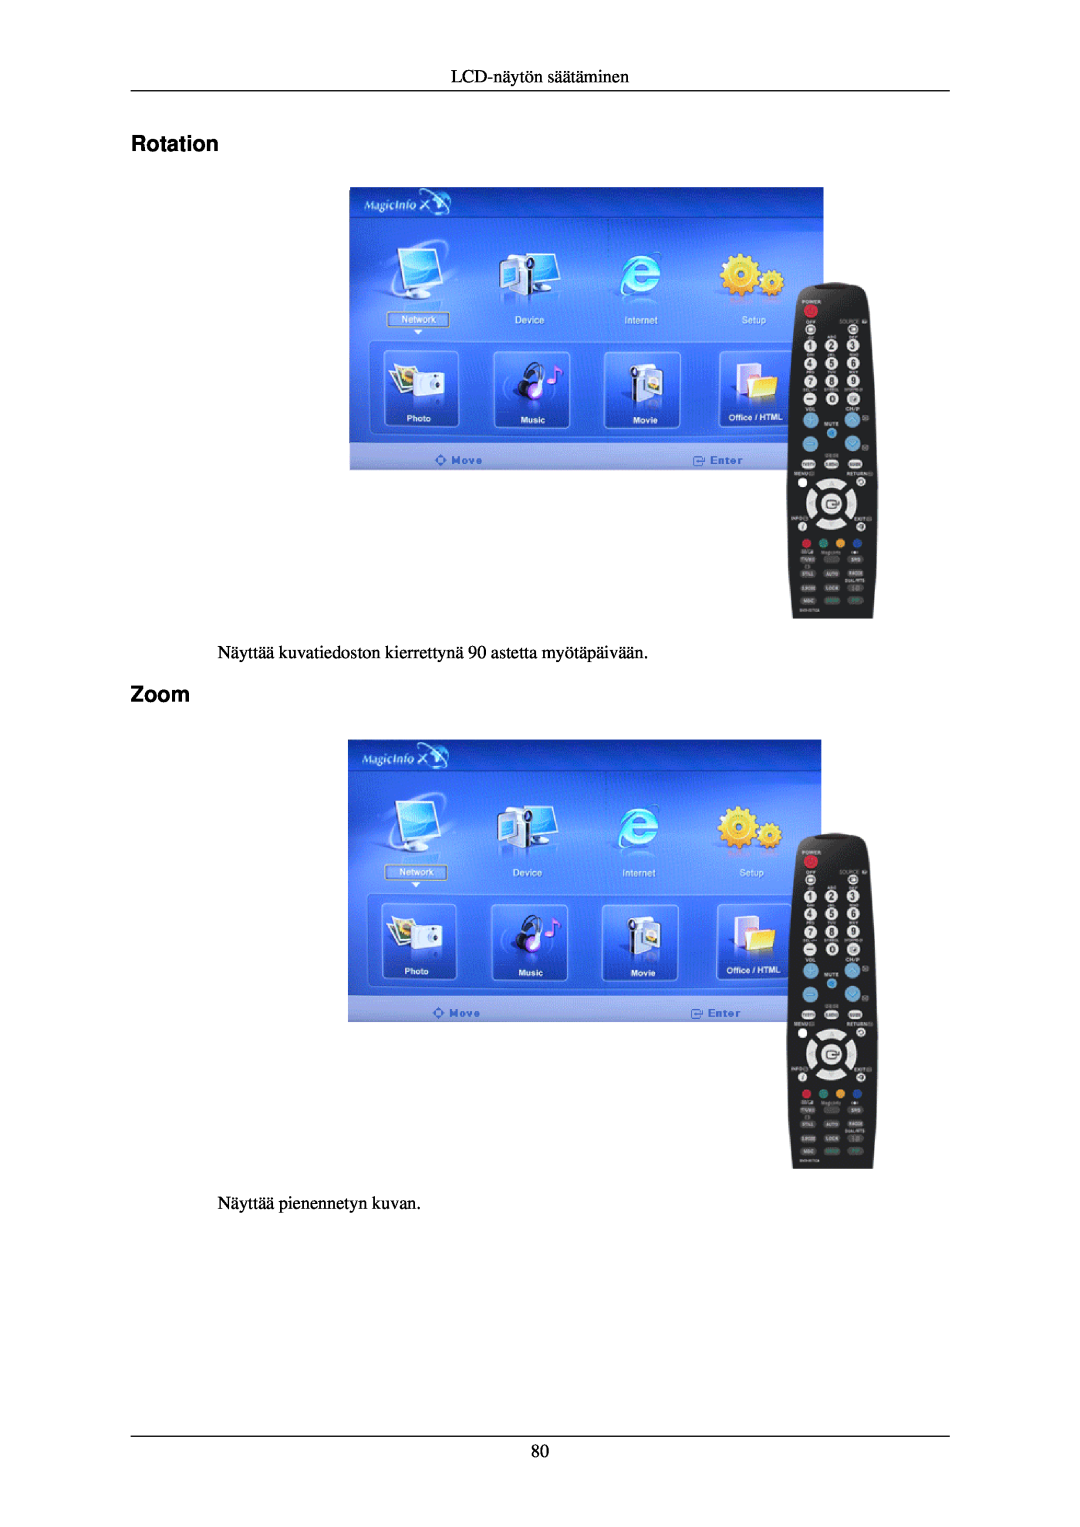 Samsung LH40TCUMBC/EN Rotation, Zoom, LCD-näytön säätäminen, Näyttää kuvatiedoston kierrettynä 90 astetta myötäpäivään 